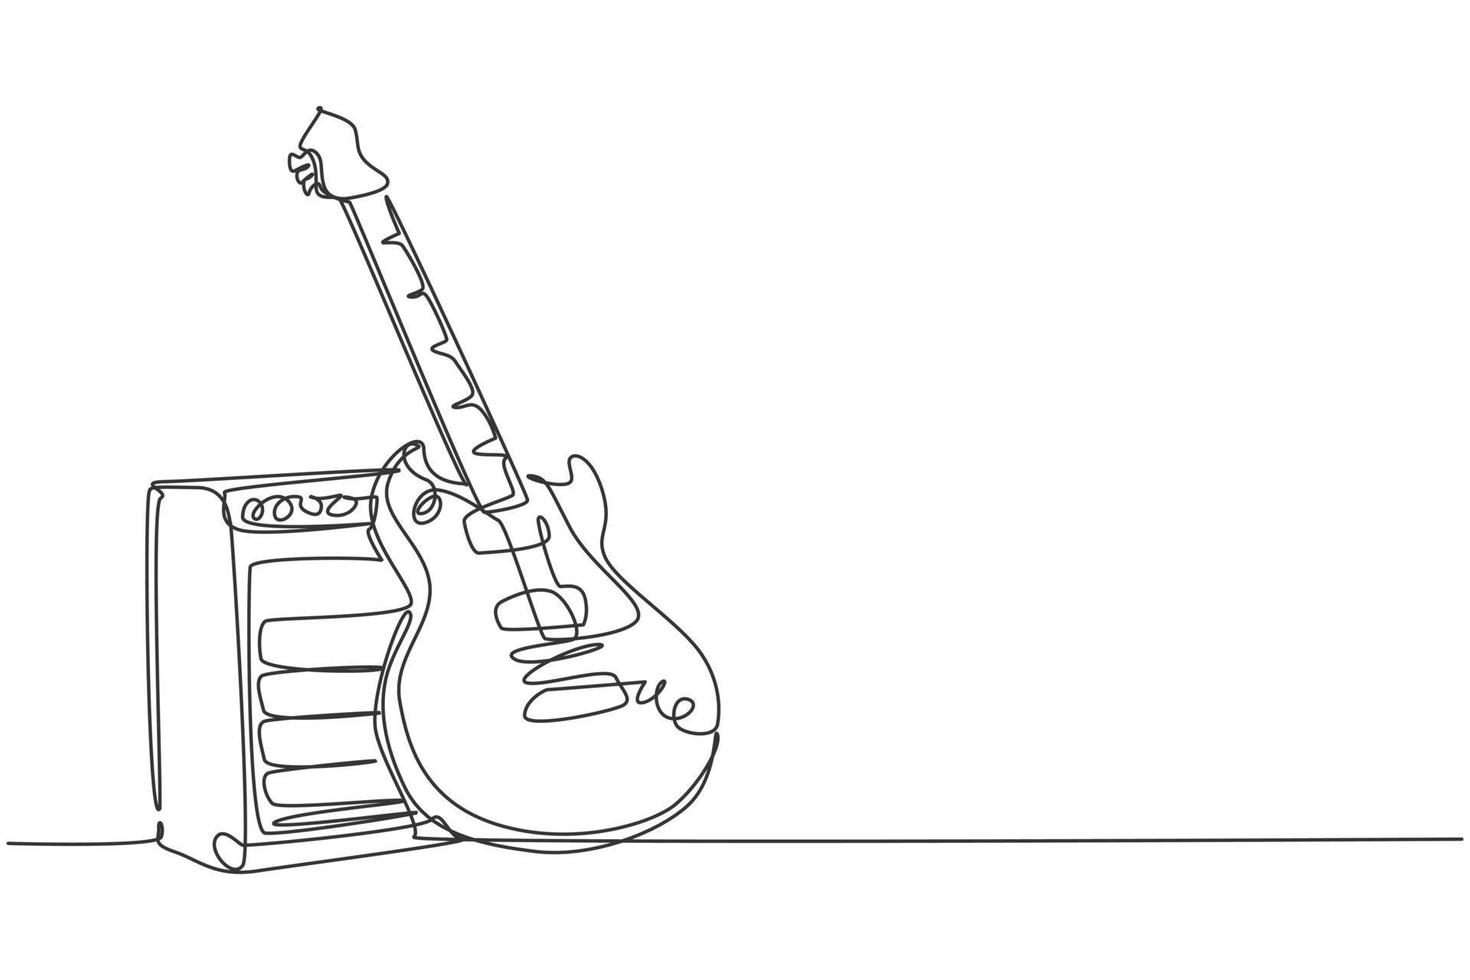 en enda radritning av elgitarr med förstärkare. strängade musikinstrument koncept. trendig kontinuerlig linje rita grafisk design vektor illustration